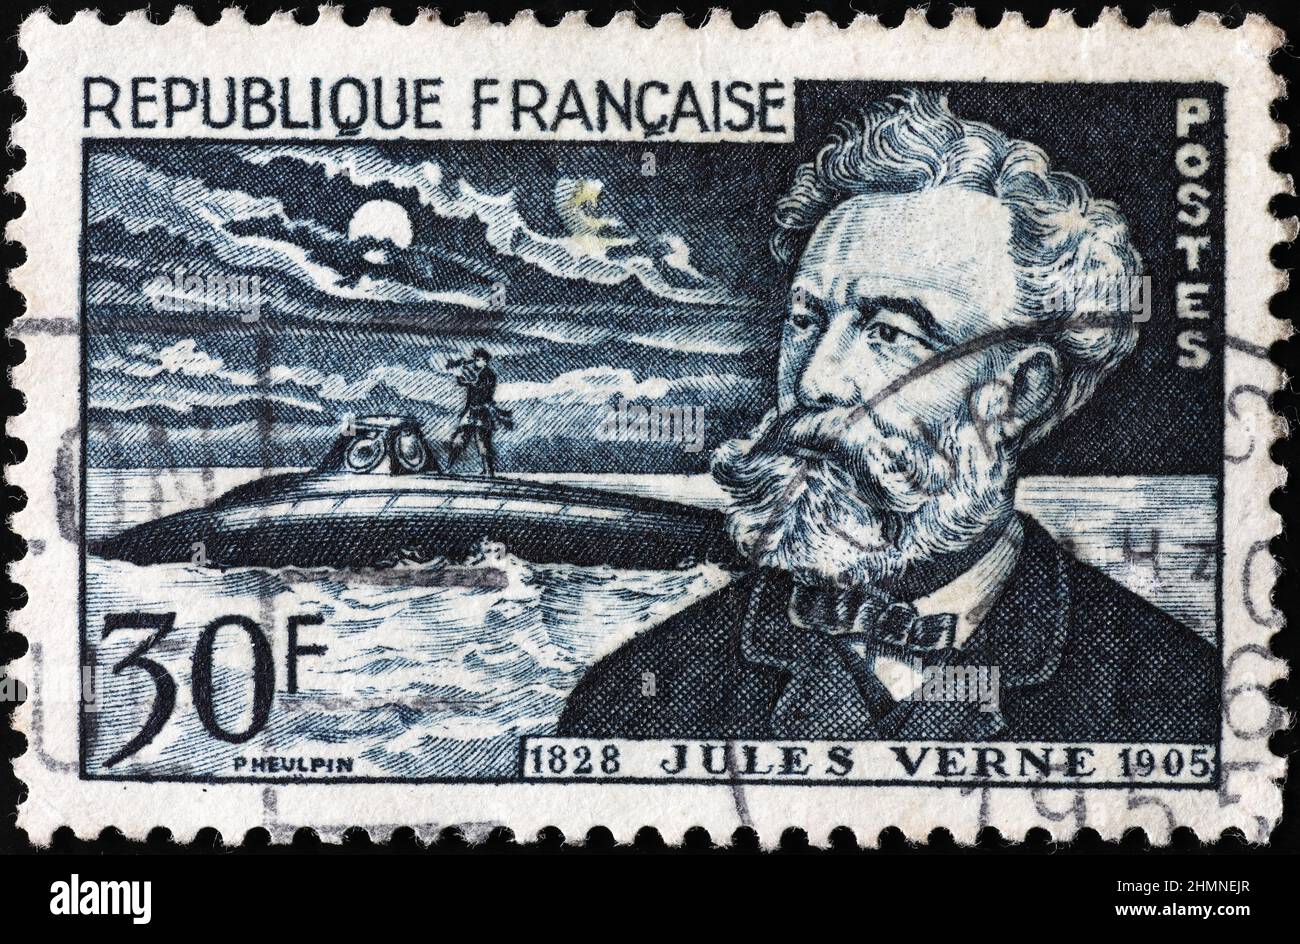 Jules Verne portrait on vintage postage stamp Stock Photo